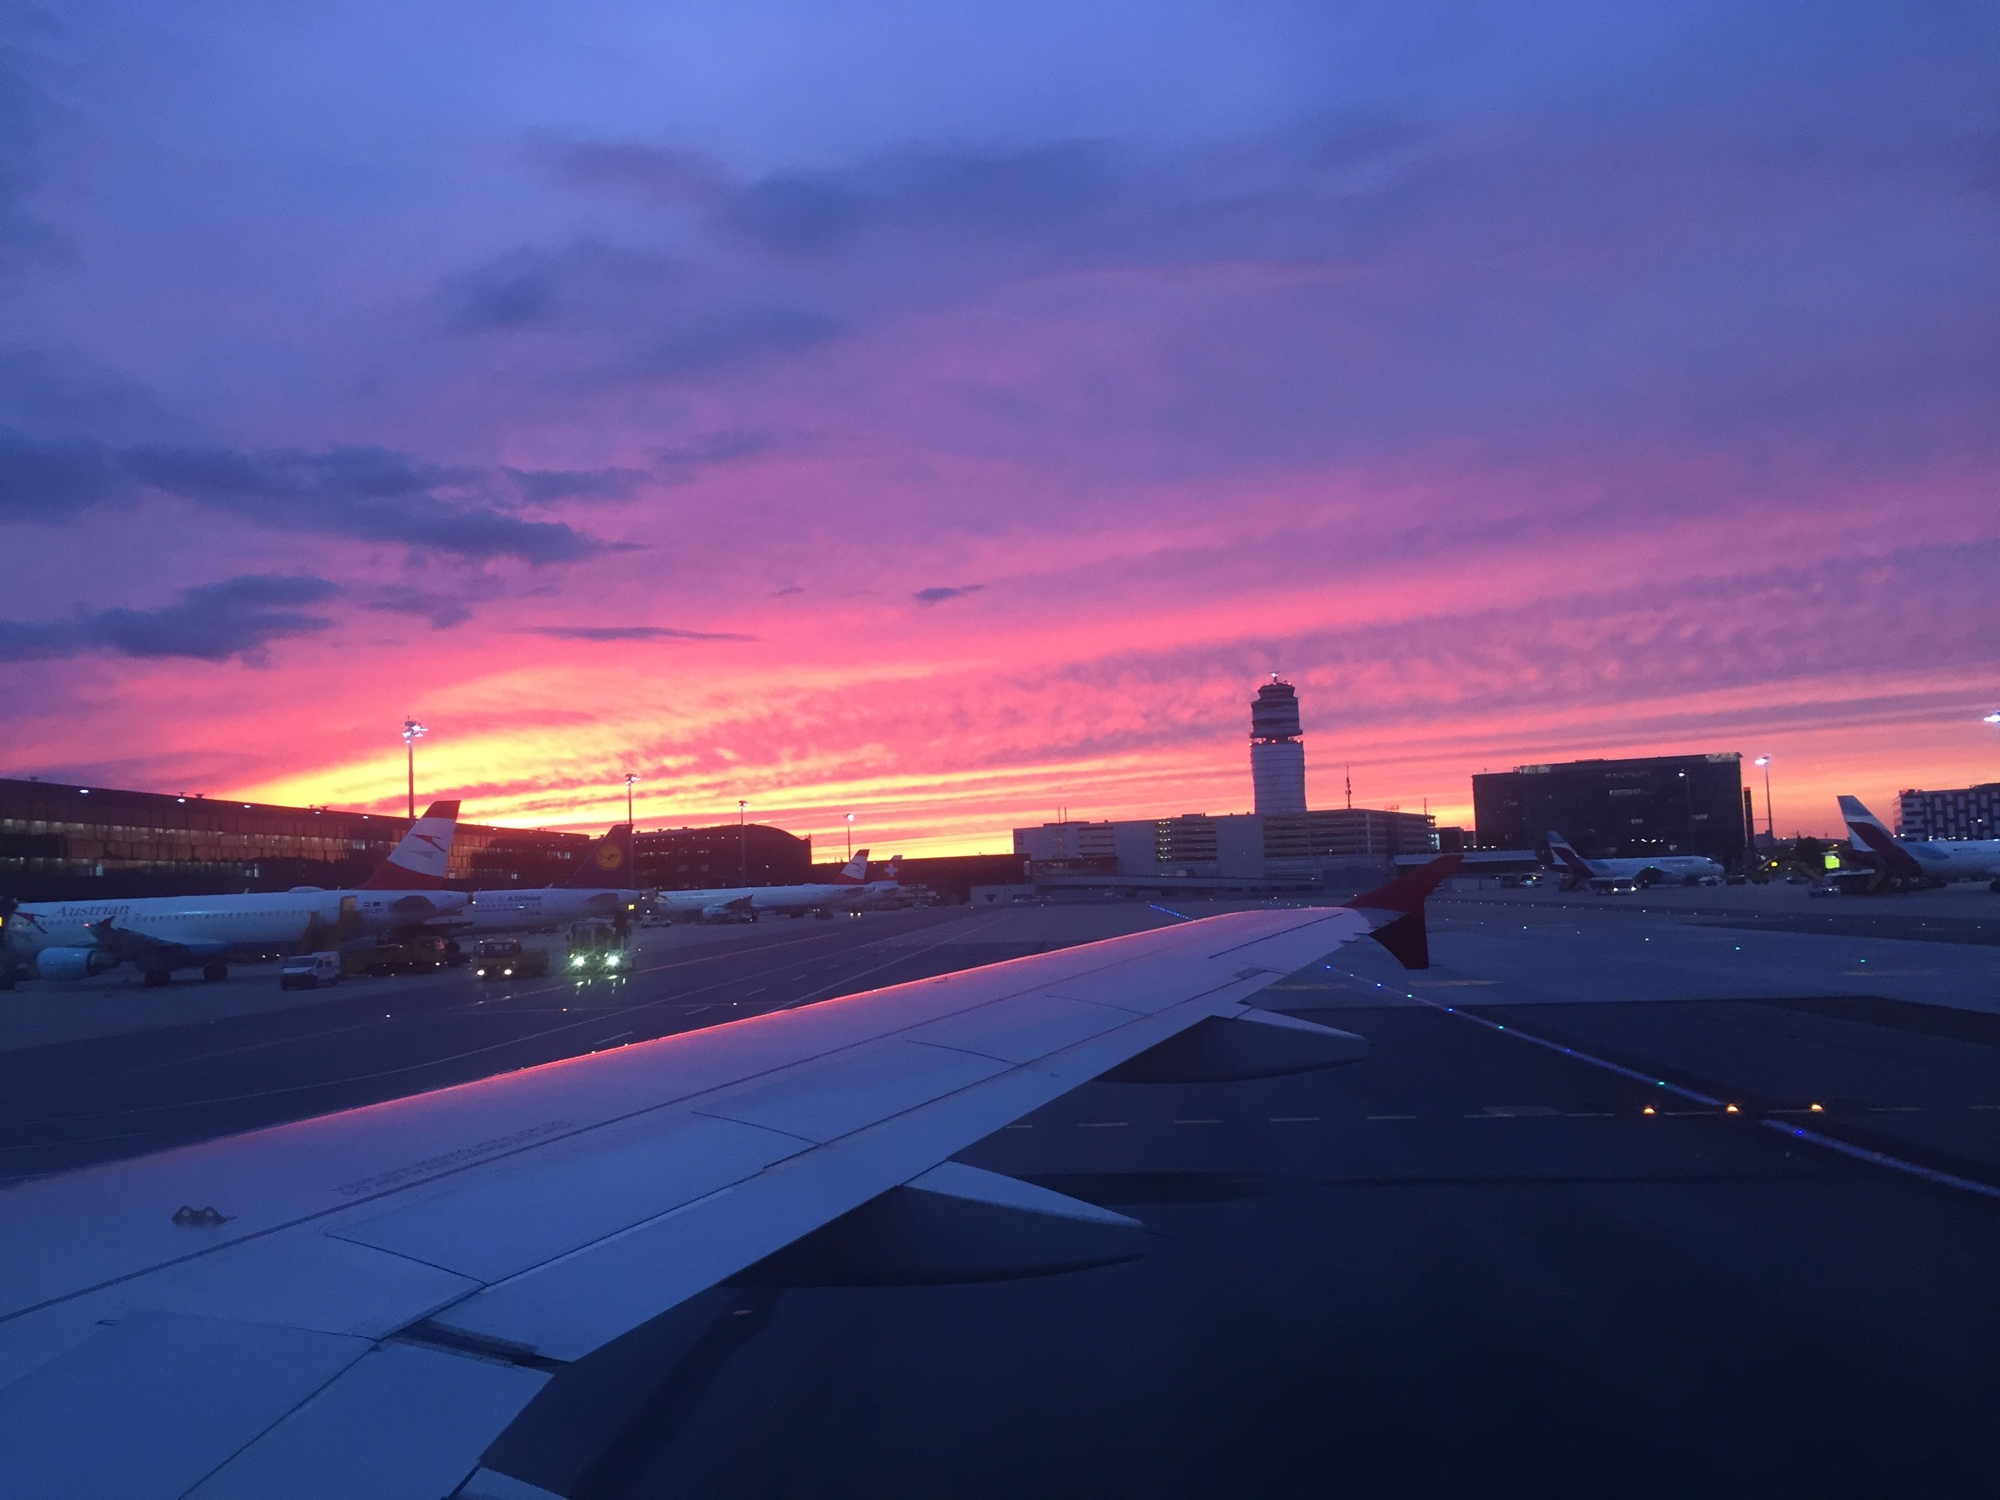 dramatischer Himmel in roso-violett-Tönen bei der Ankunft am Flughafen Wien Schwechat